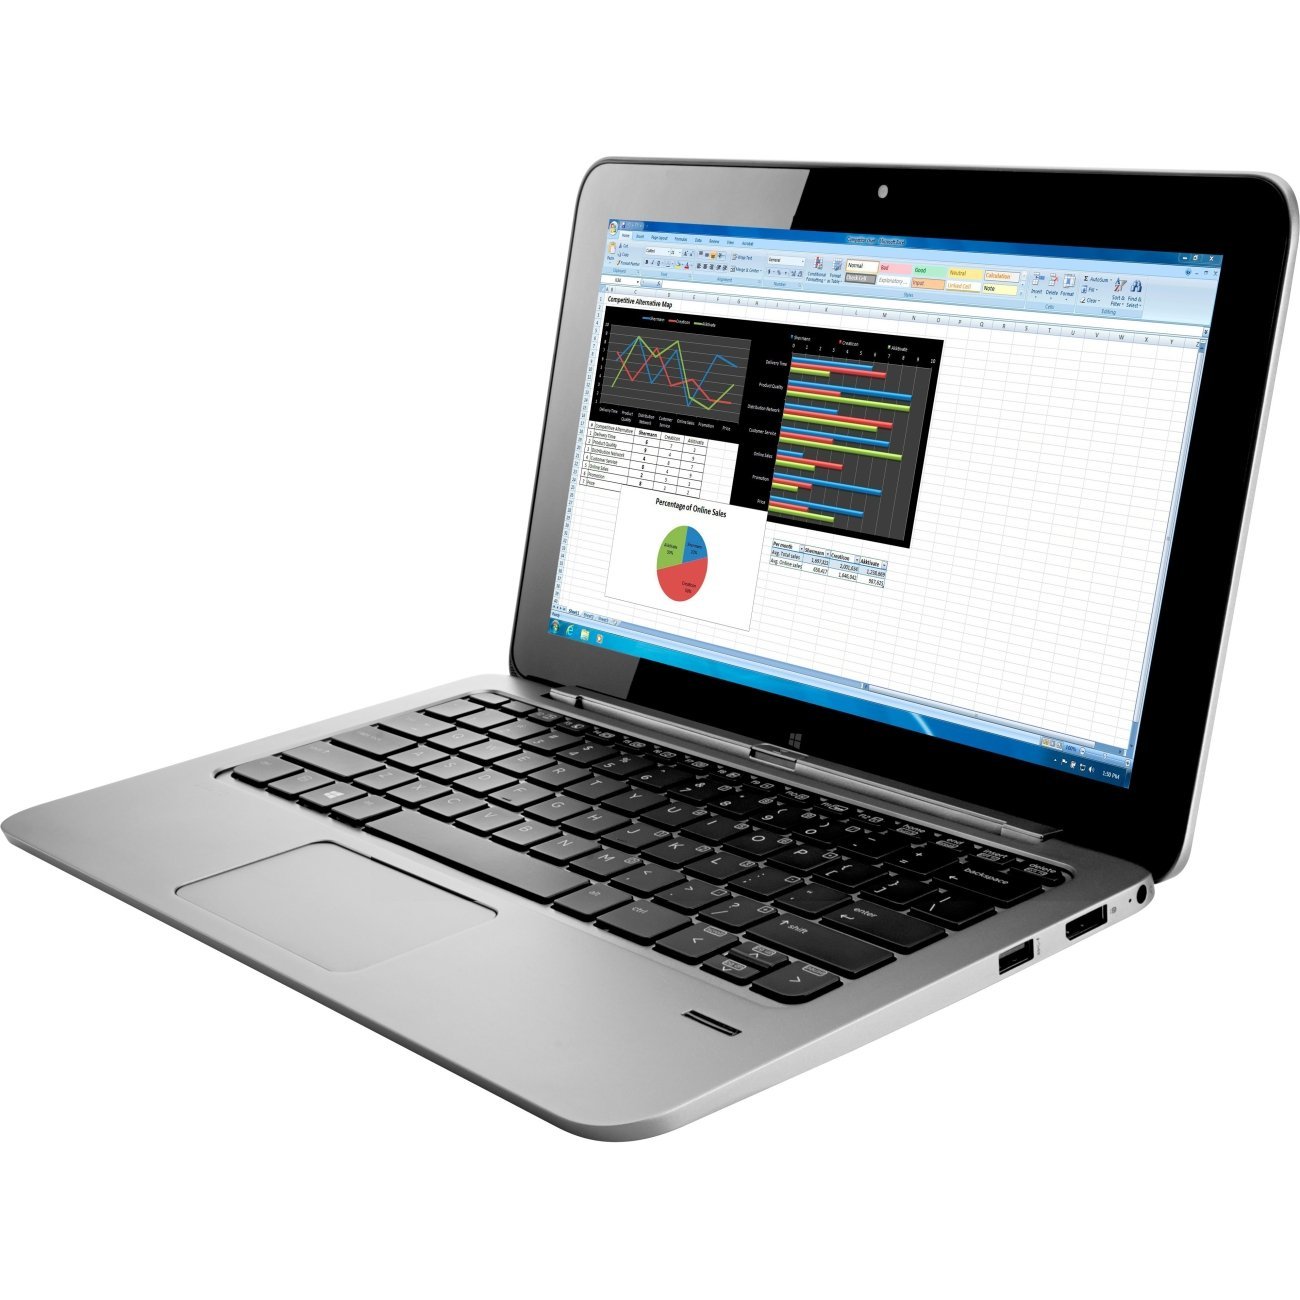 Laptop HP  Elite X2 1012 G1 W9C58PA (Silver)